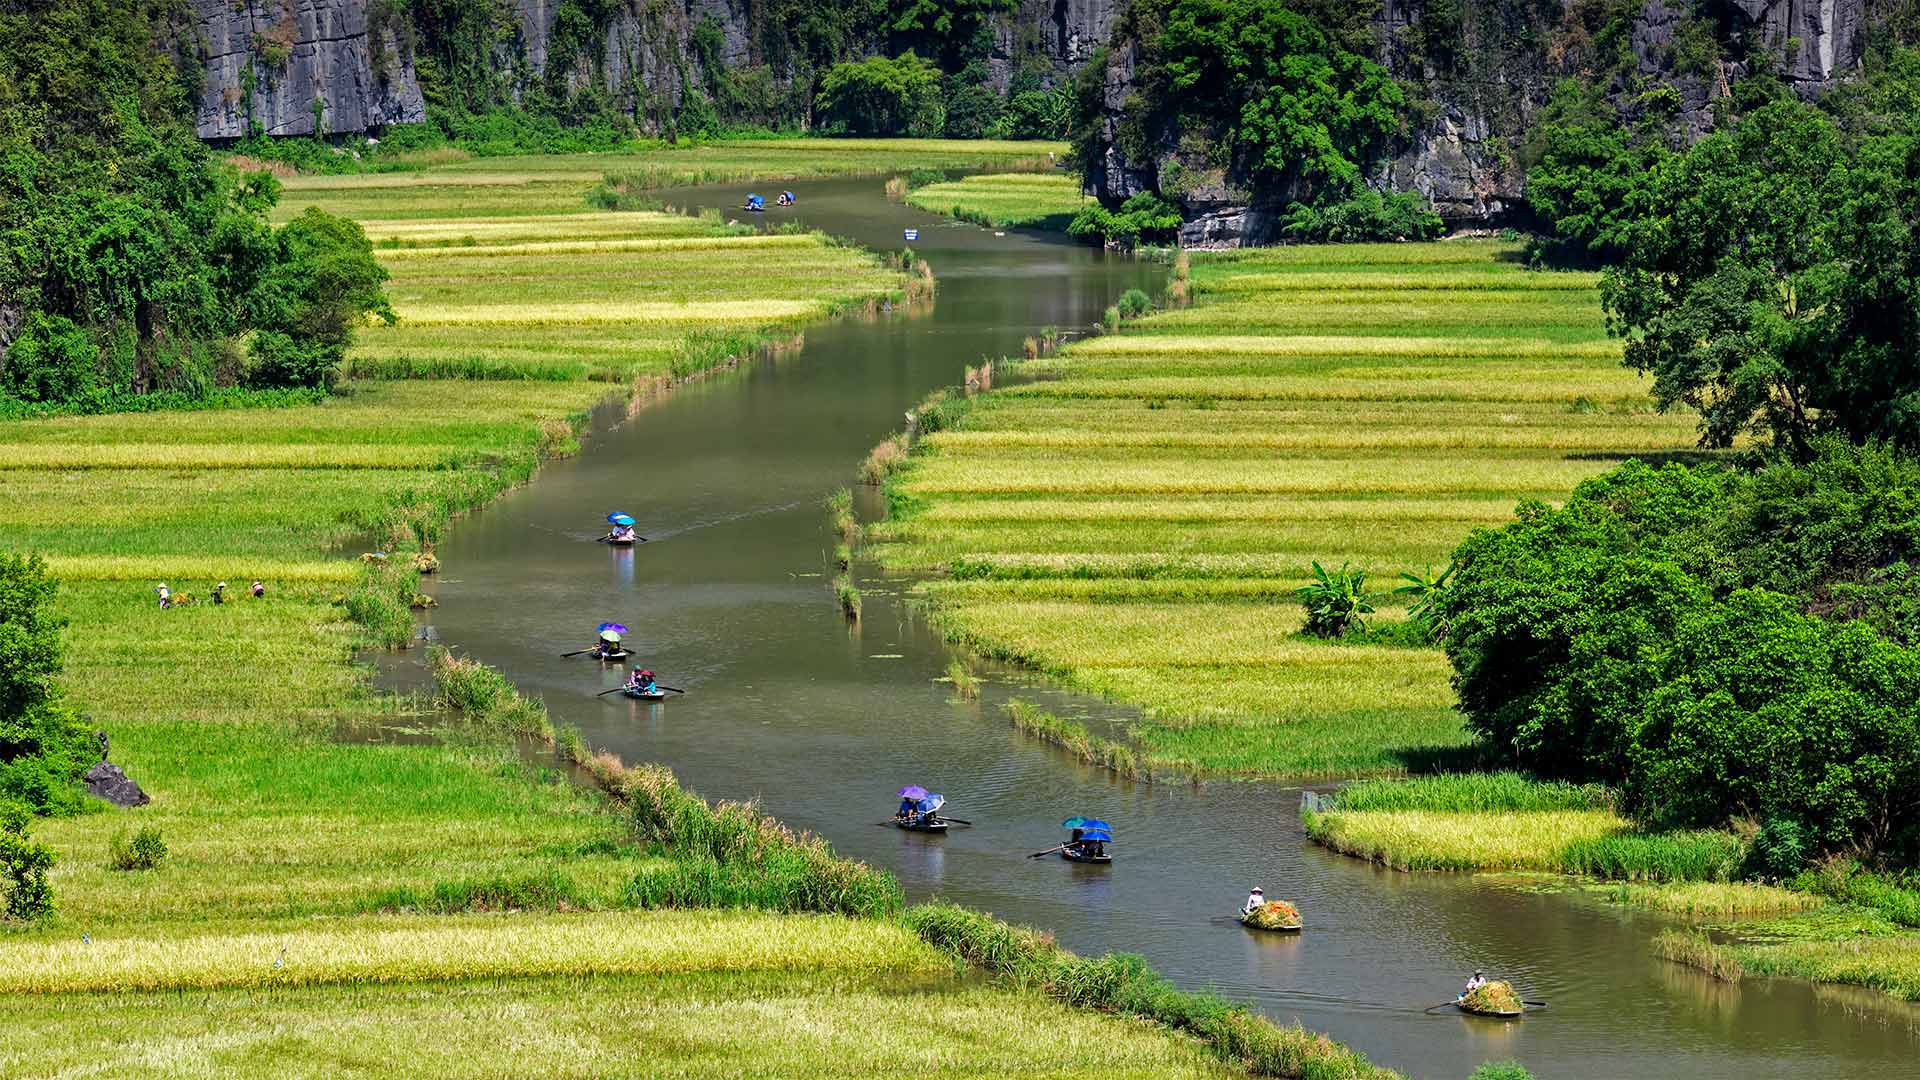 A river runs through rice fields